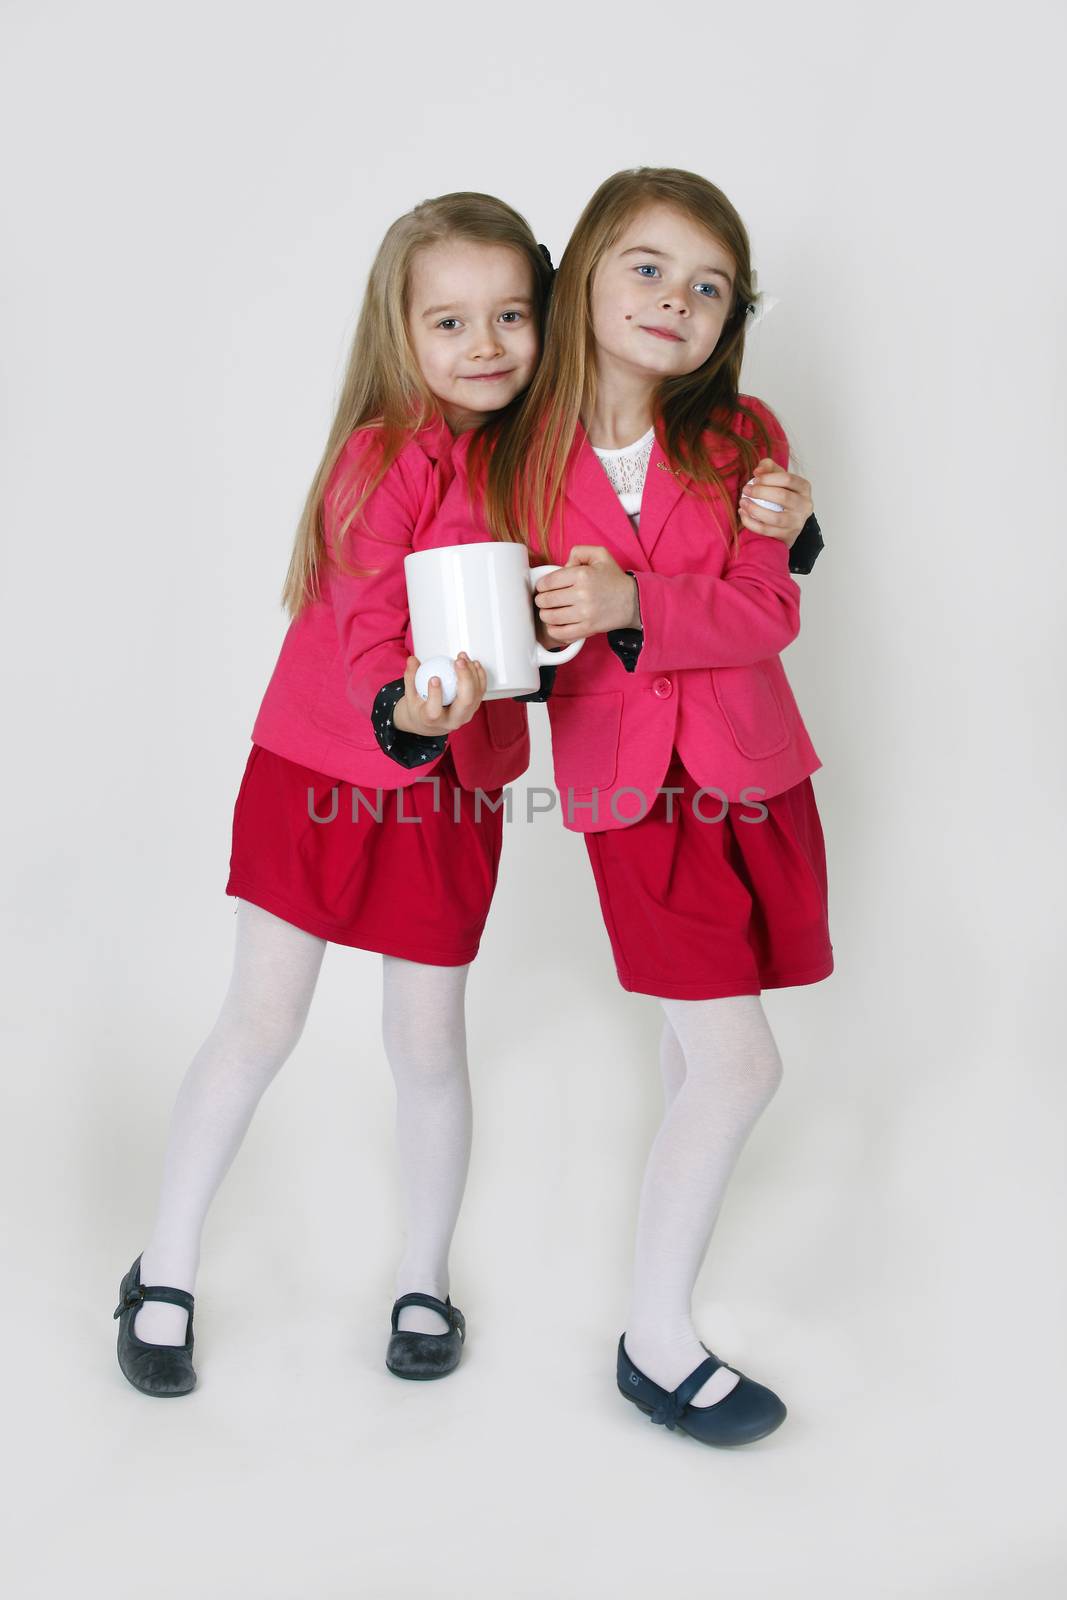 6 years old sisters by DigiArtFoto